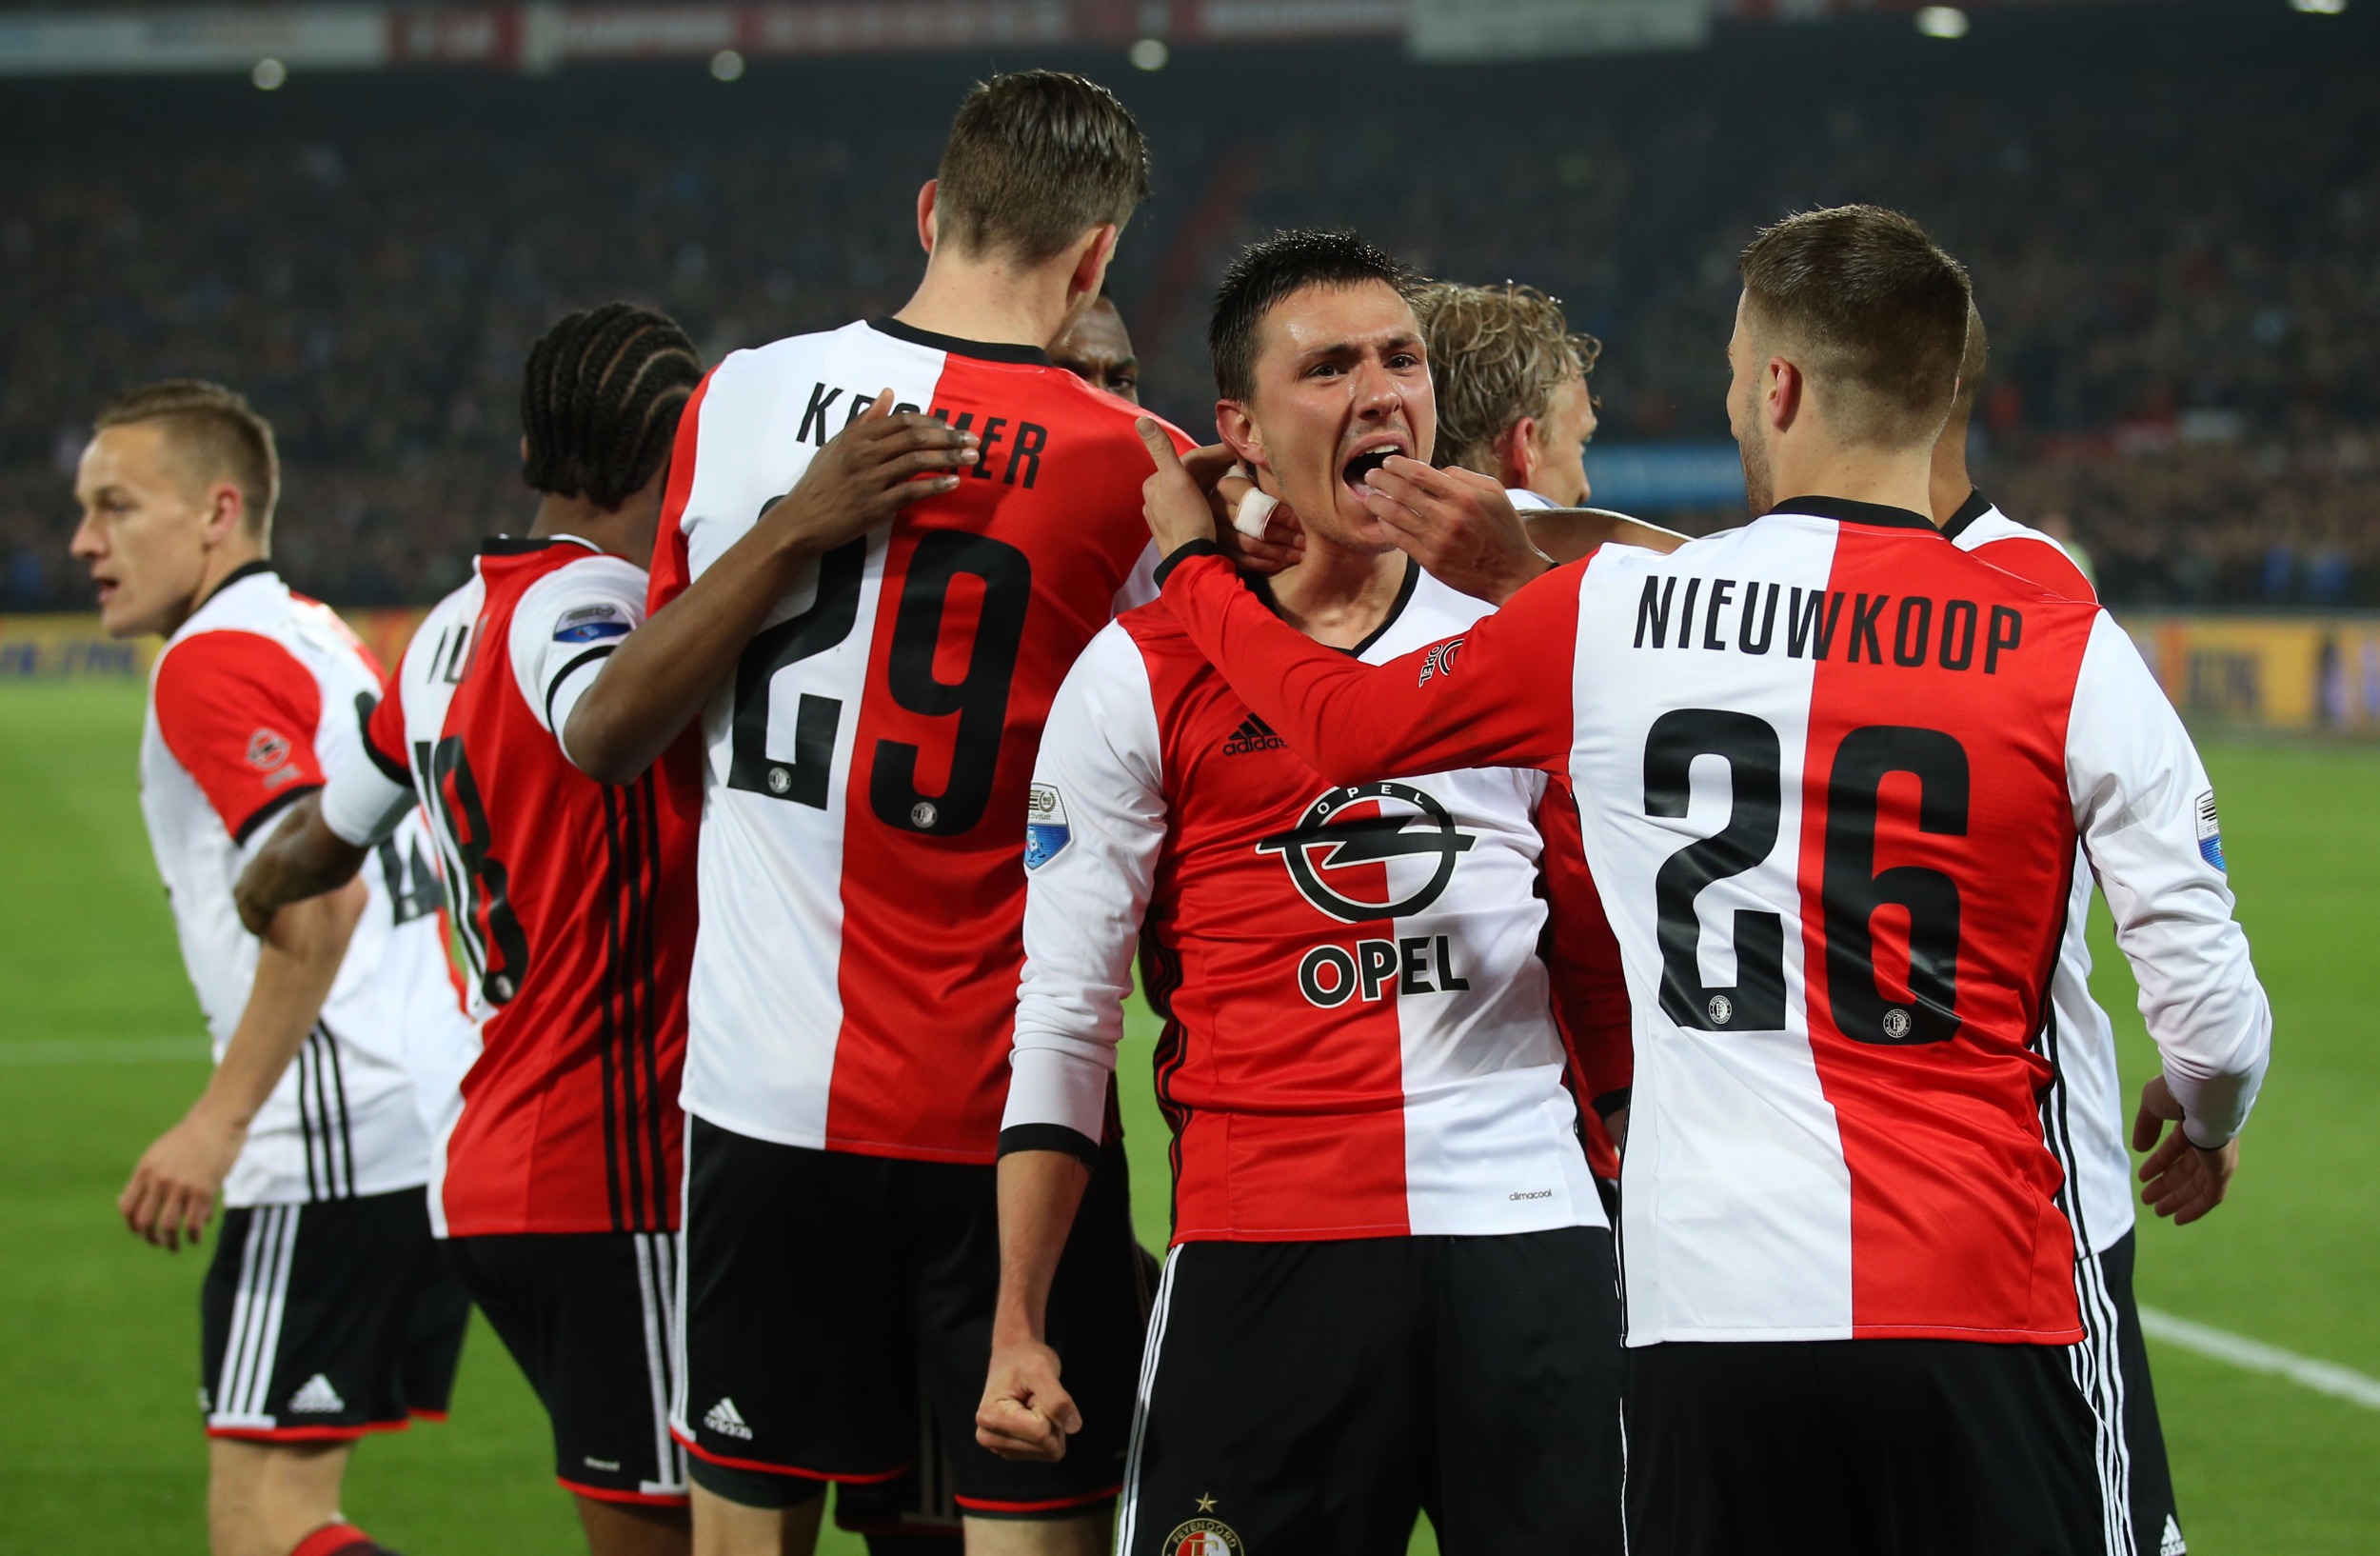 Feyenoord-Go%20ahead%20eagles-21